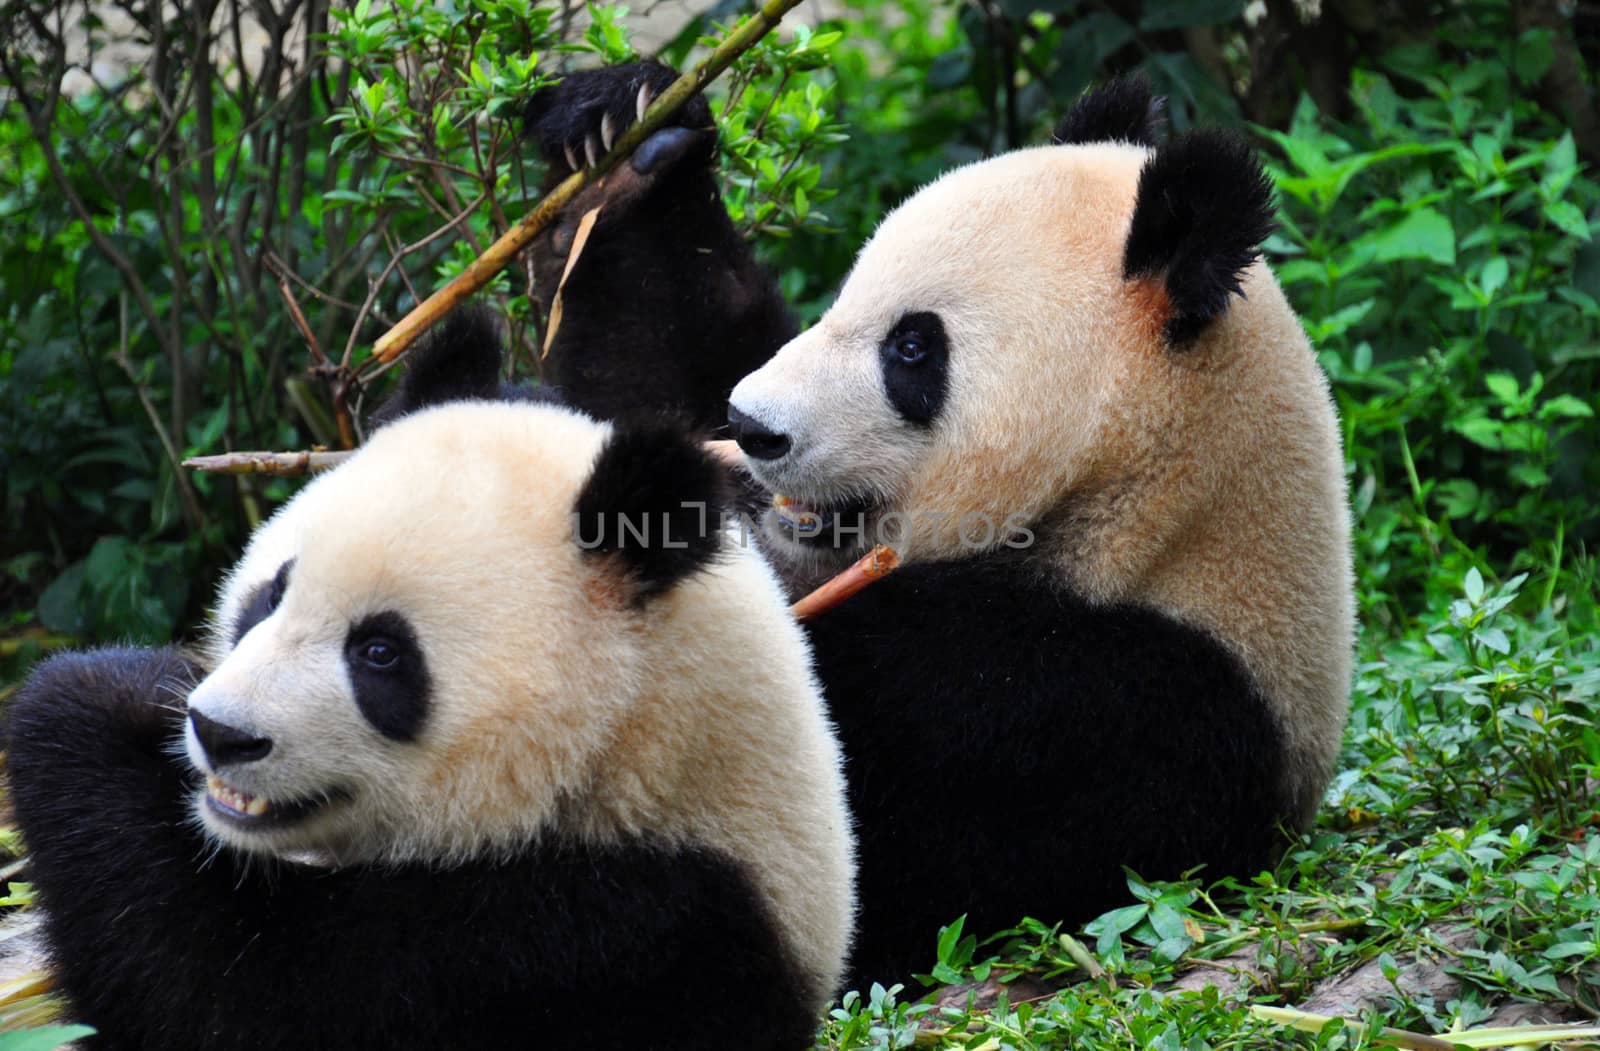 A pair of Pandas eating bamboo at the National Panda Reserve, Chengdu, China.